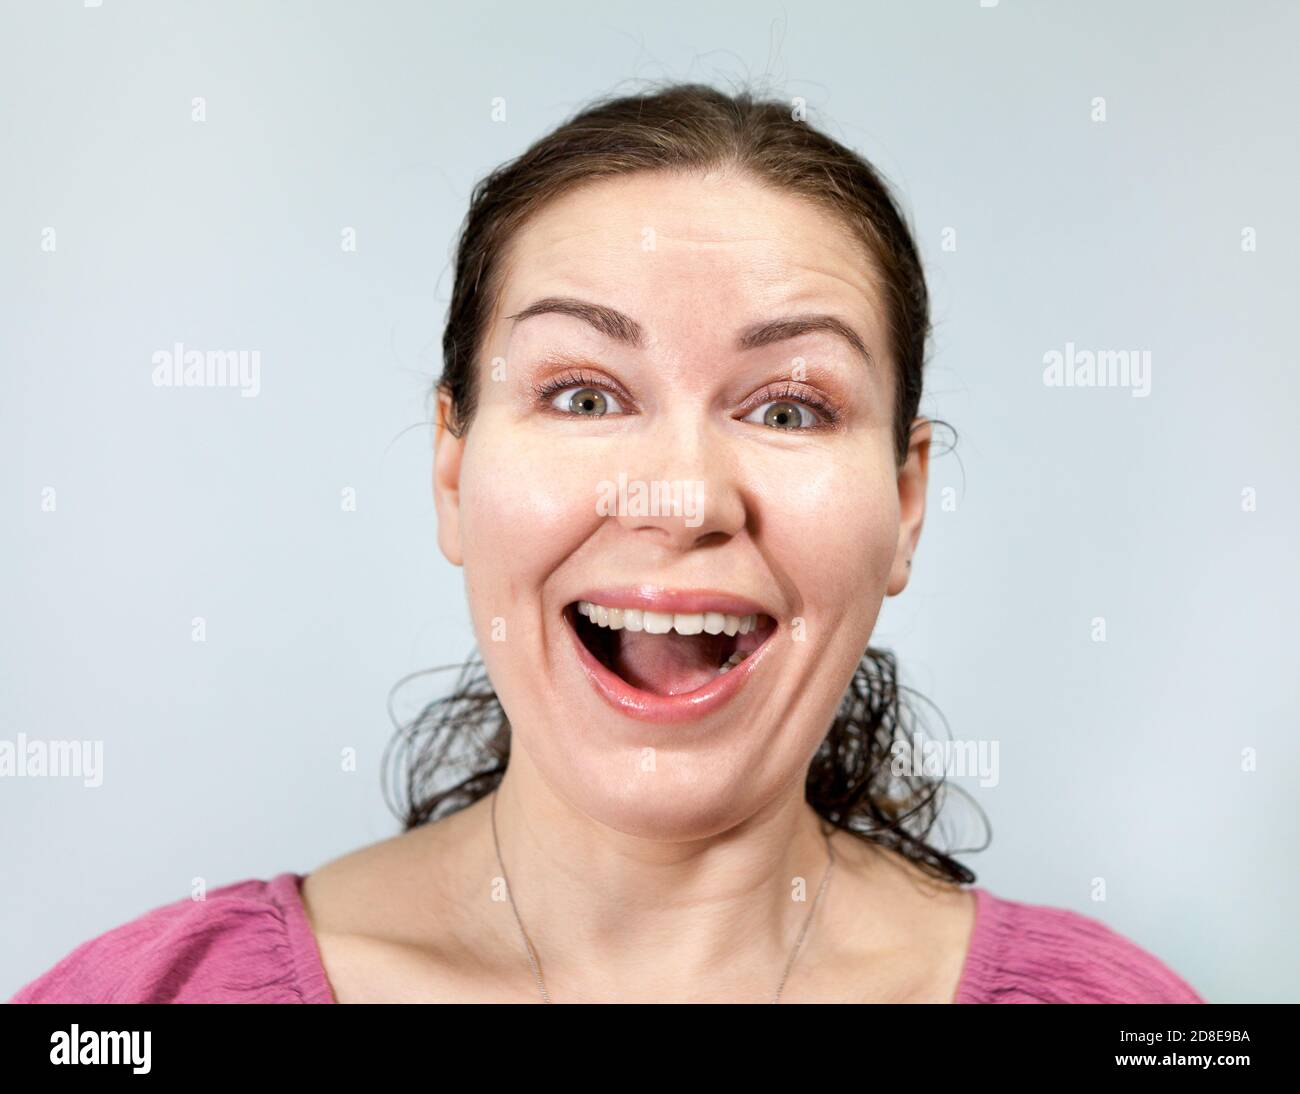 Ein breites, dummes Lächeln auf dem Gesicht der kaukasischen Frau, die sich in ein Lachen verwandelt, Porträt auf grauem Hintergrund, Emotionsreihe. Stockfoto